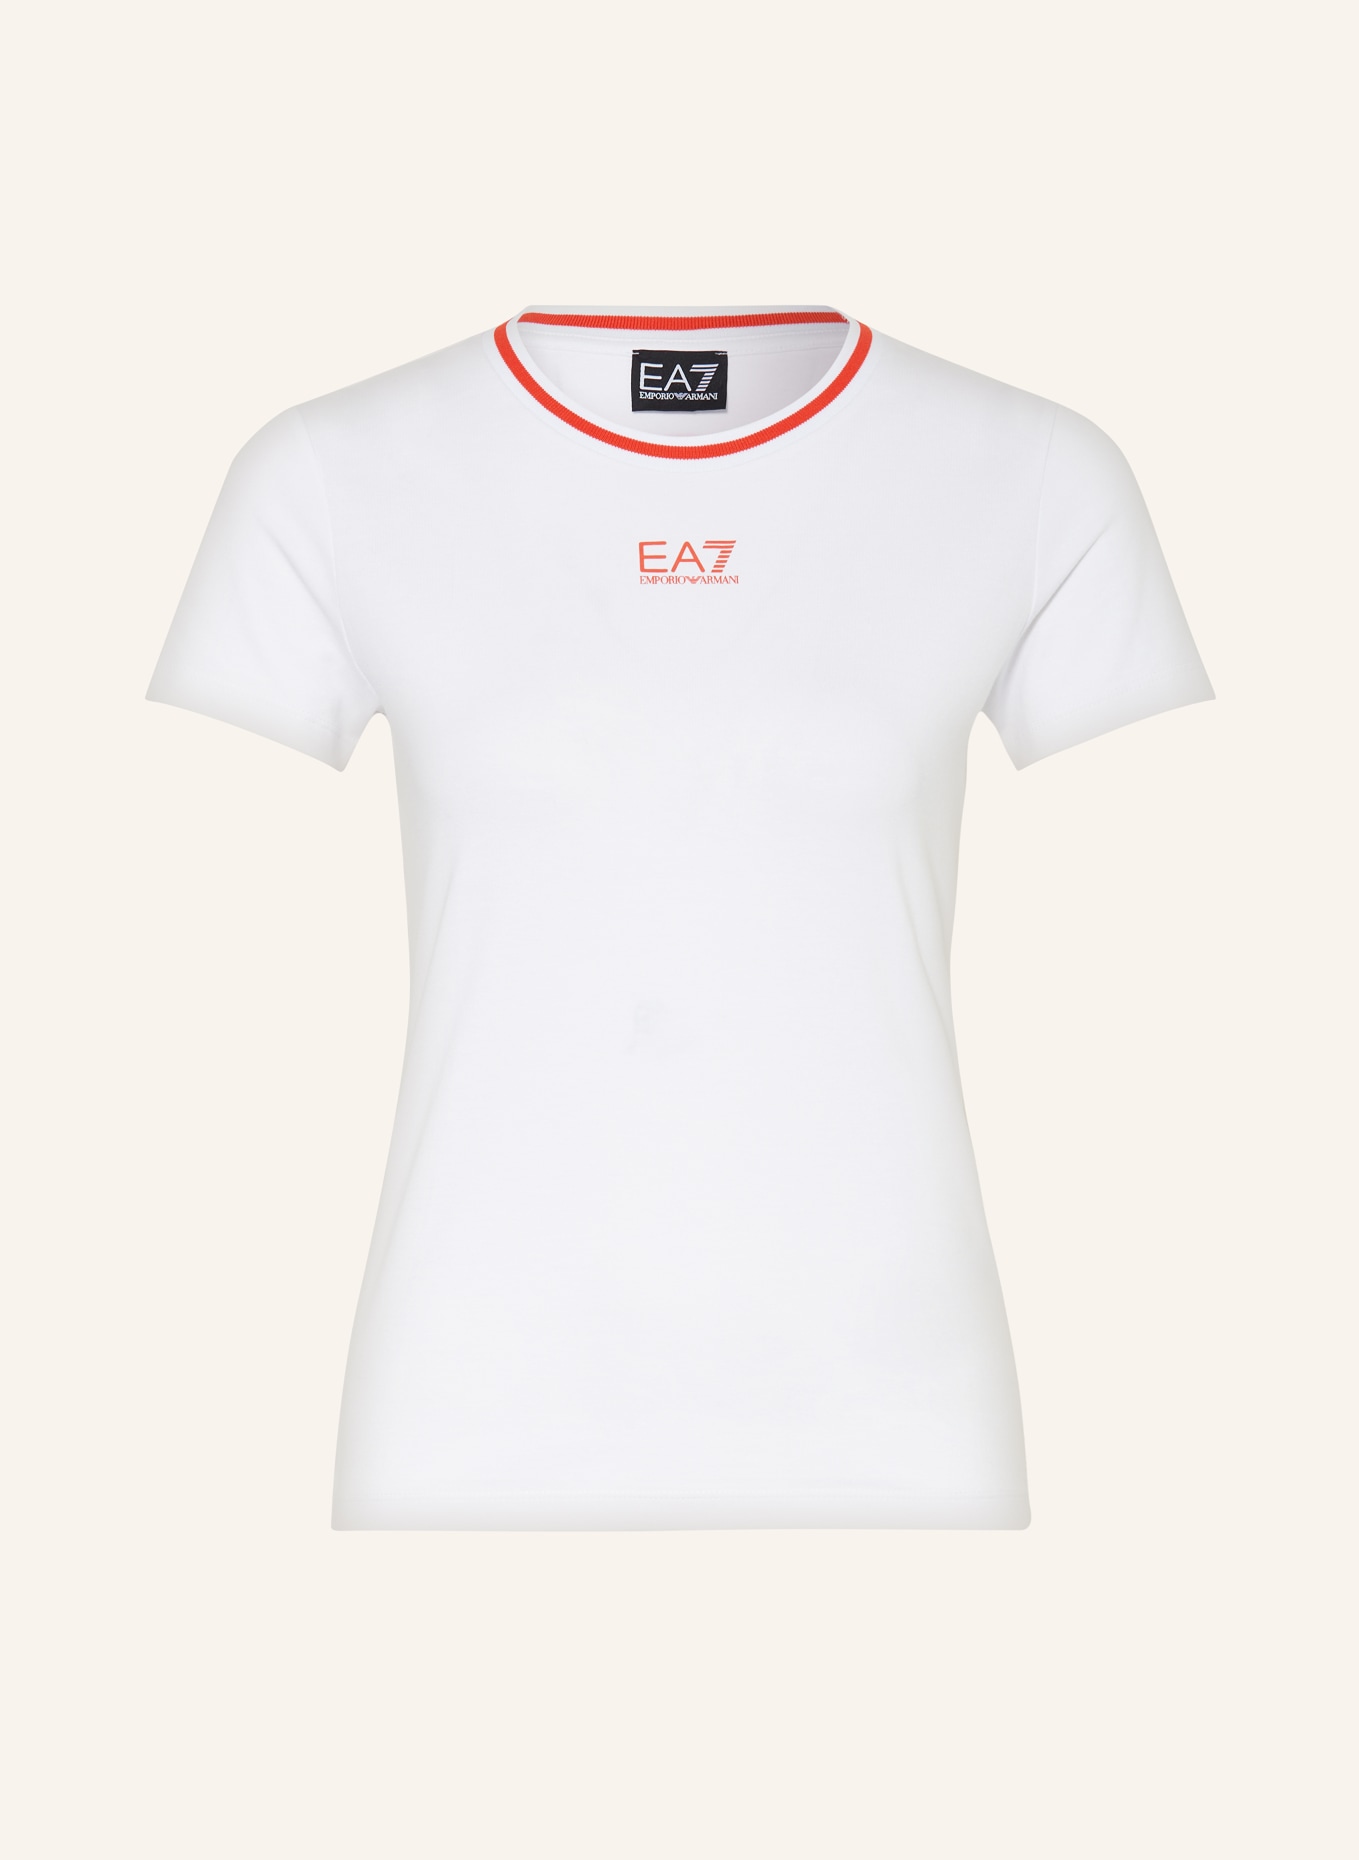 EA7 EMPORIO ARMANI T-shirt, Color: WHITE (Image 1)